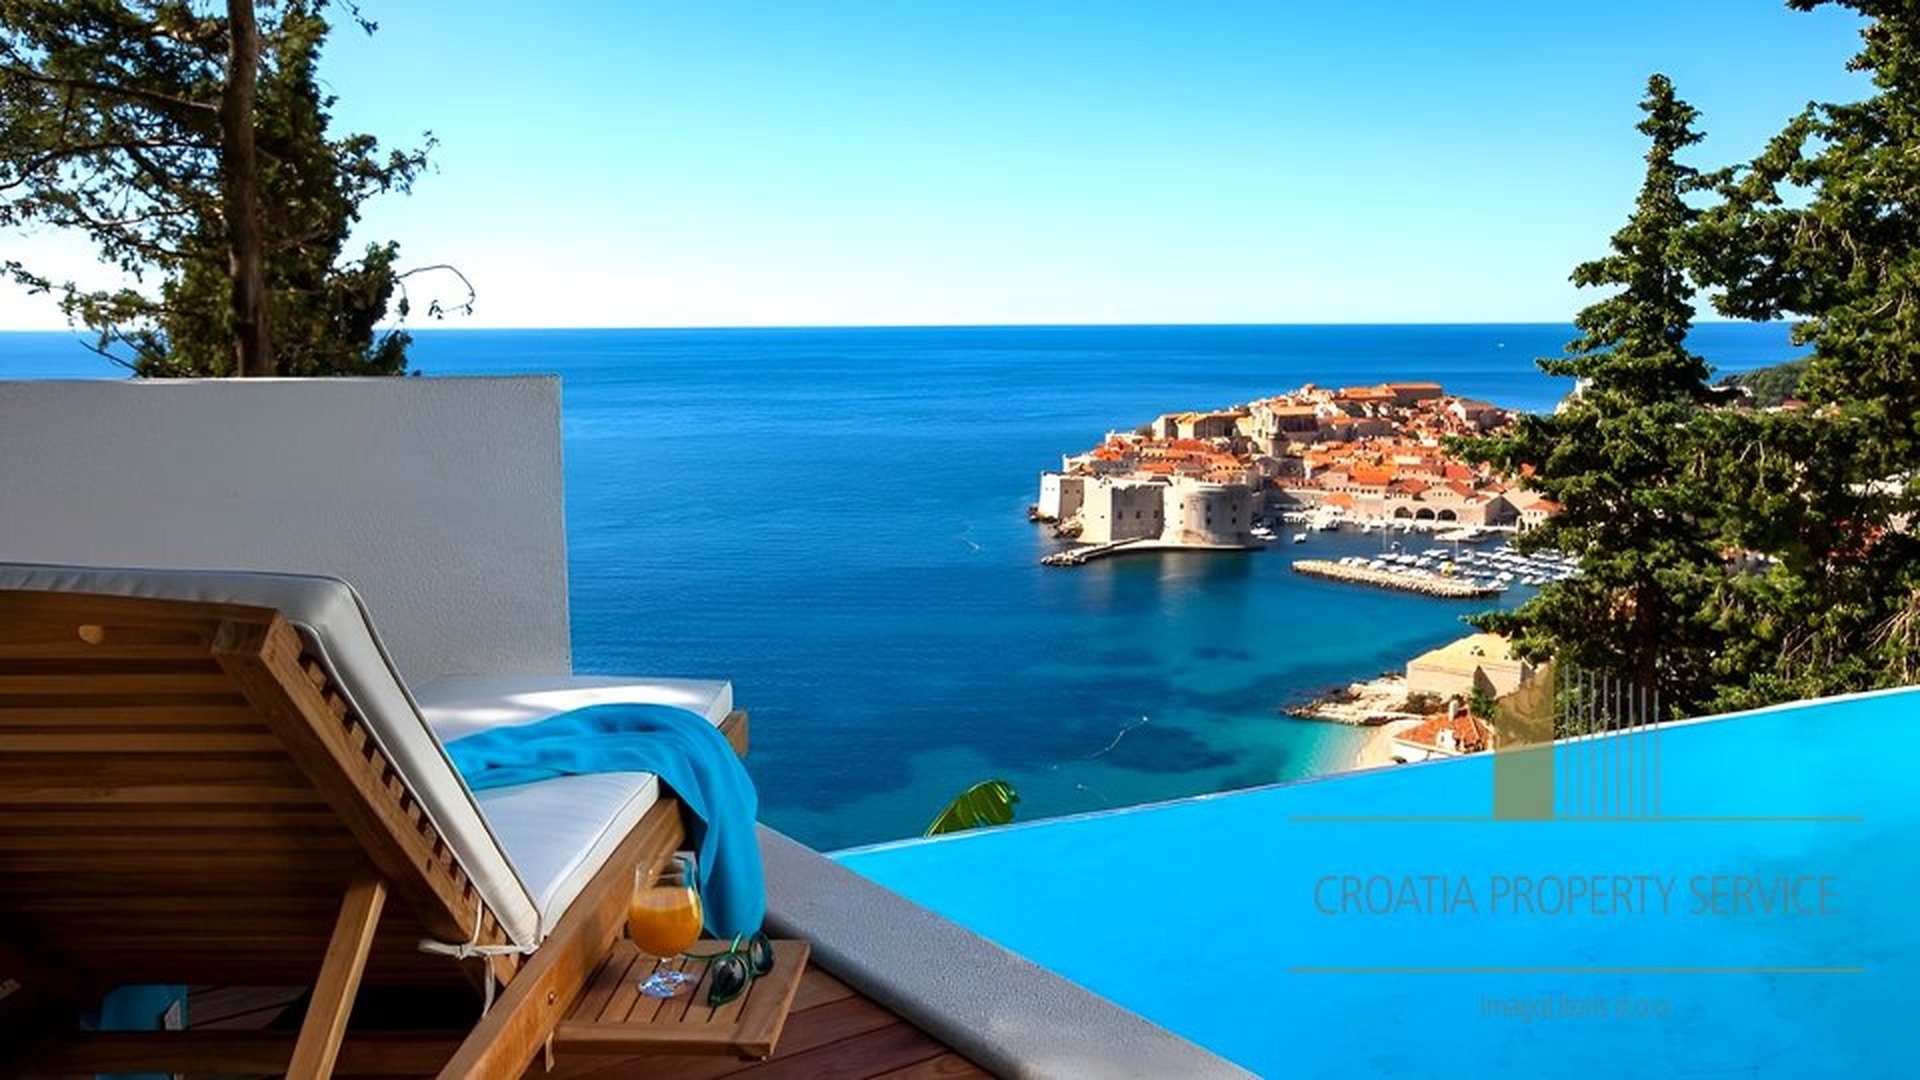 Investiranje u nekretnine u Dubrovniku: Što trebate znati o tržištu i potencijalnim dobicima